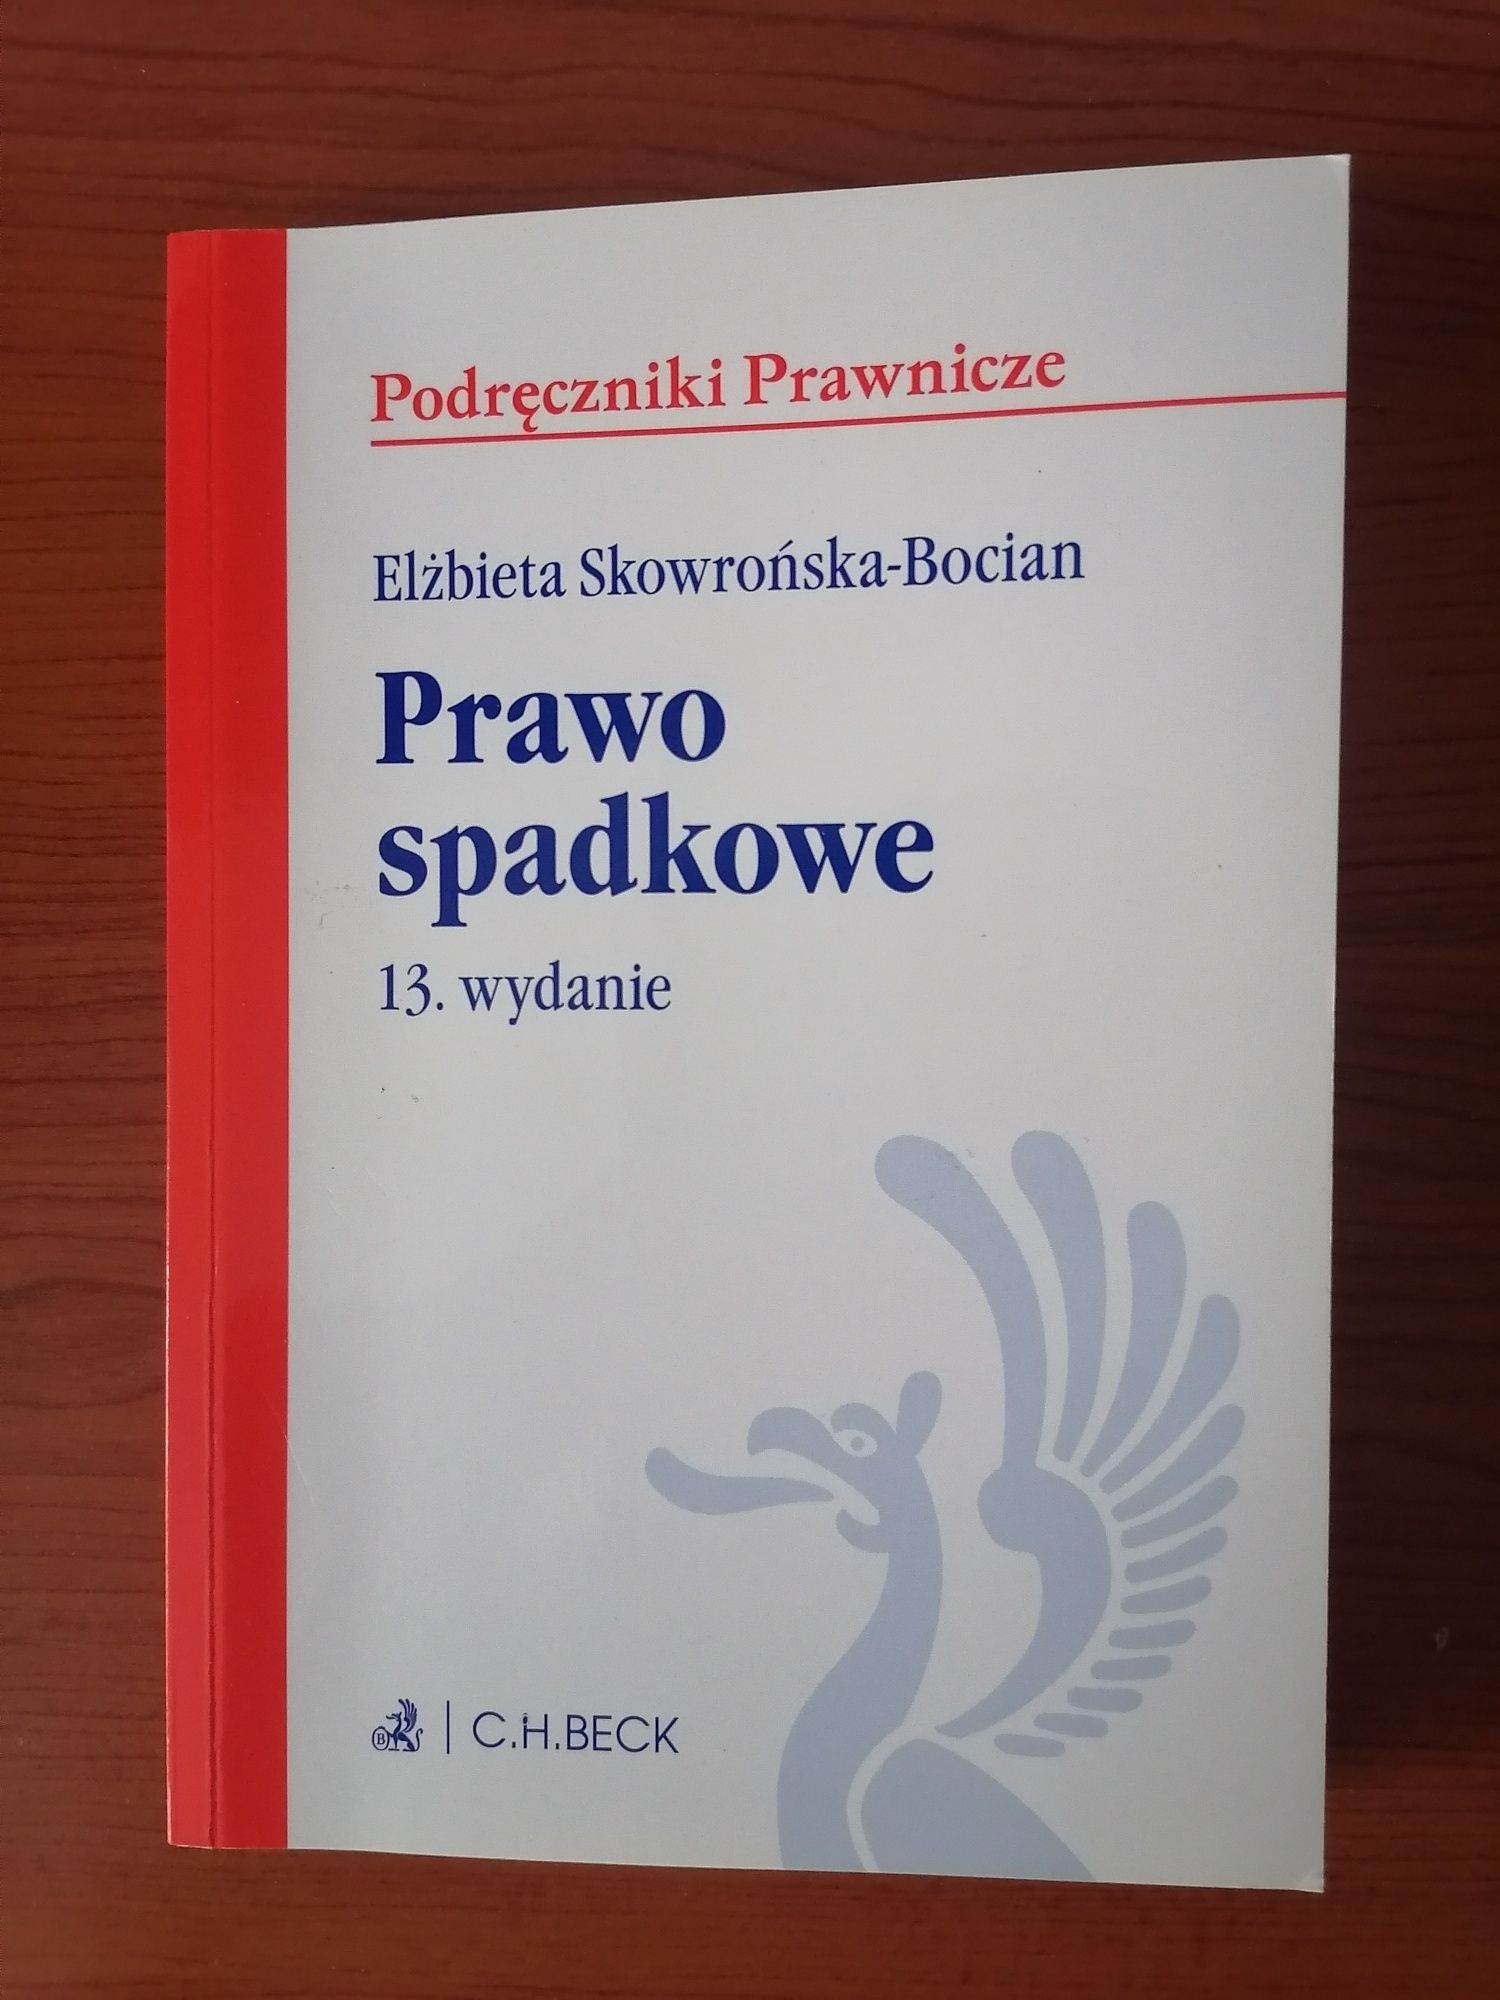 Prawo spadkowe Elżbieta Skowrońska-Bocian, wydanie 13